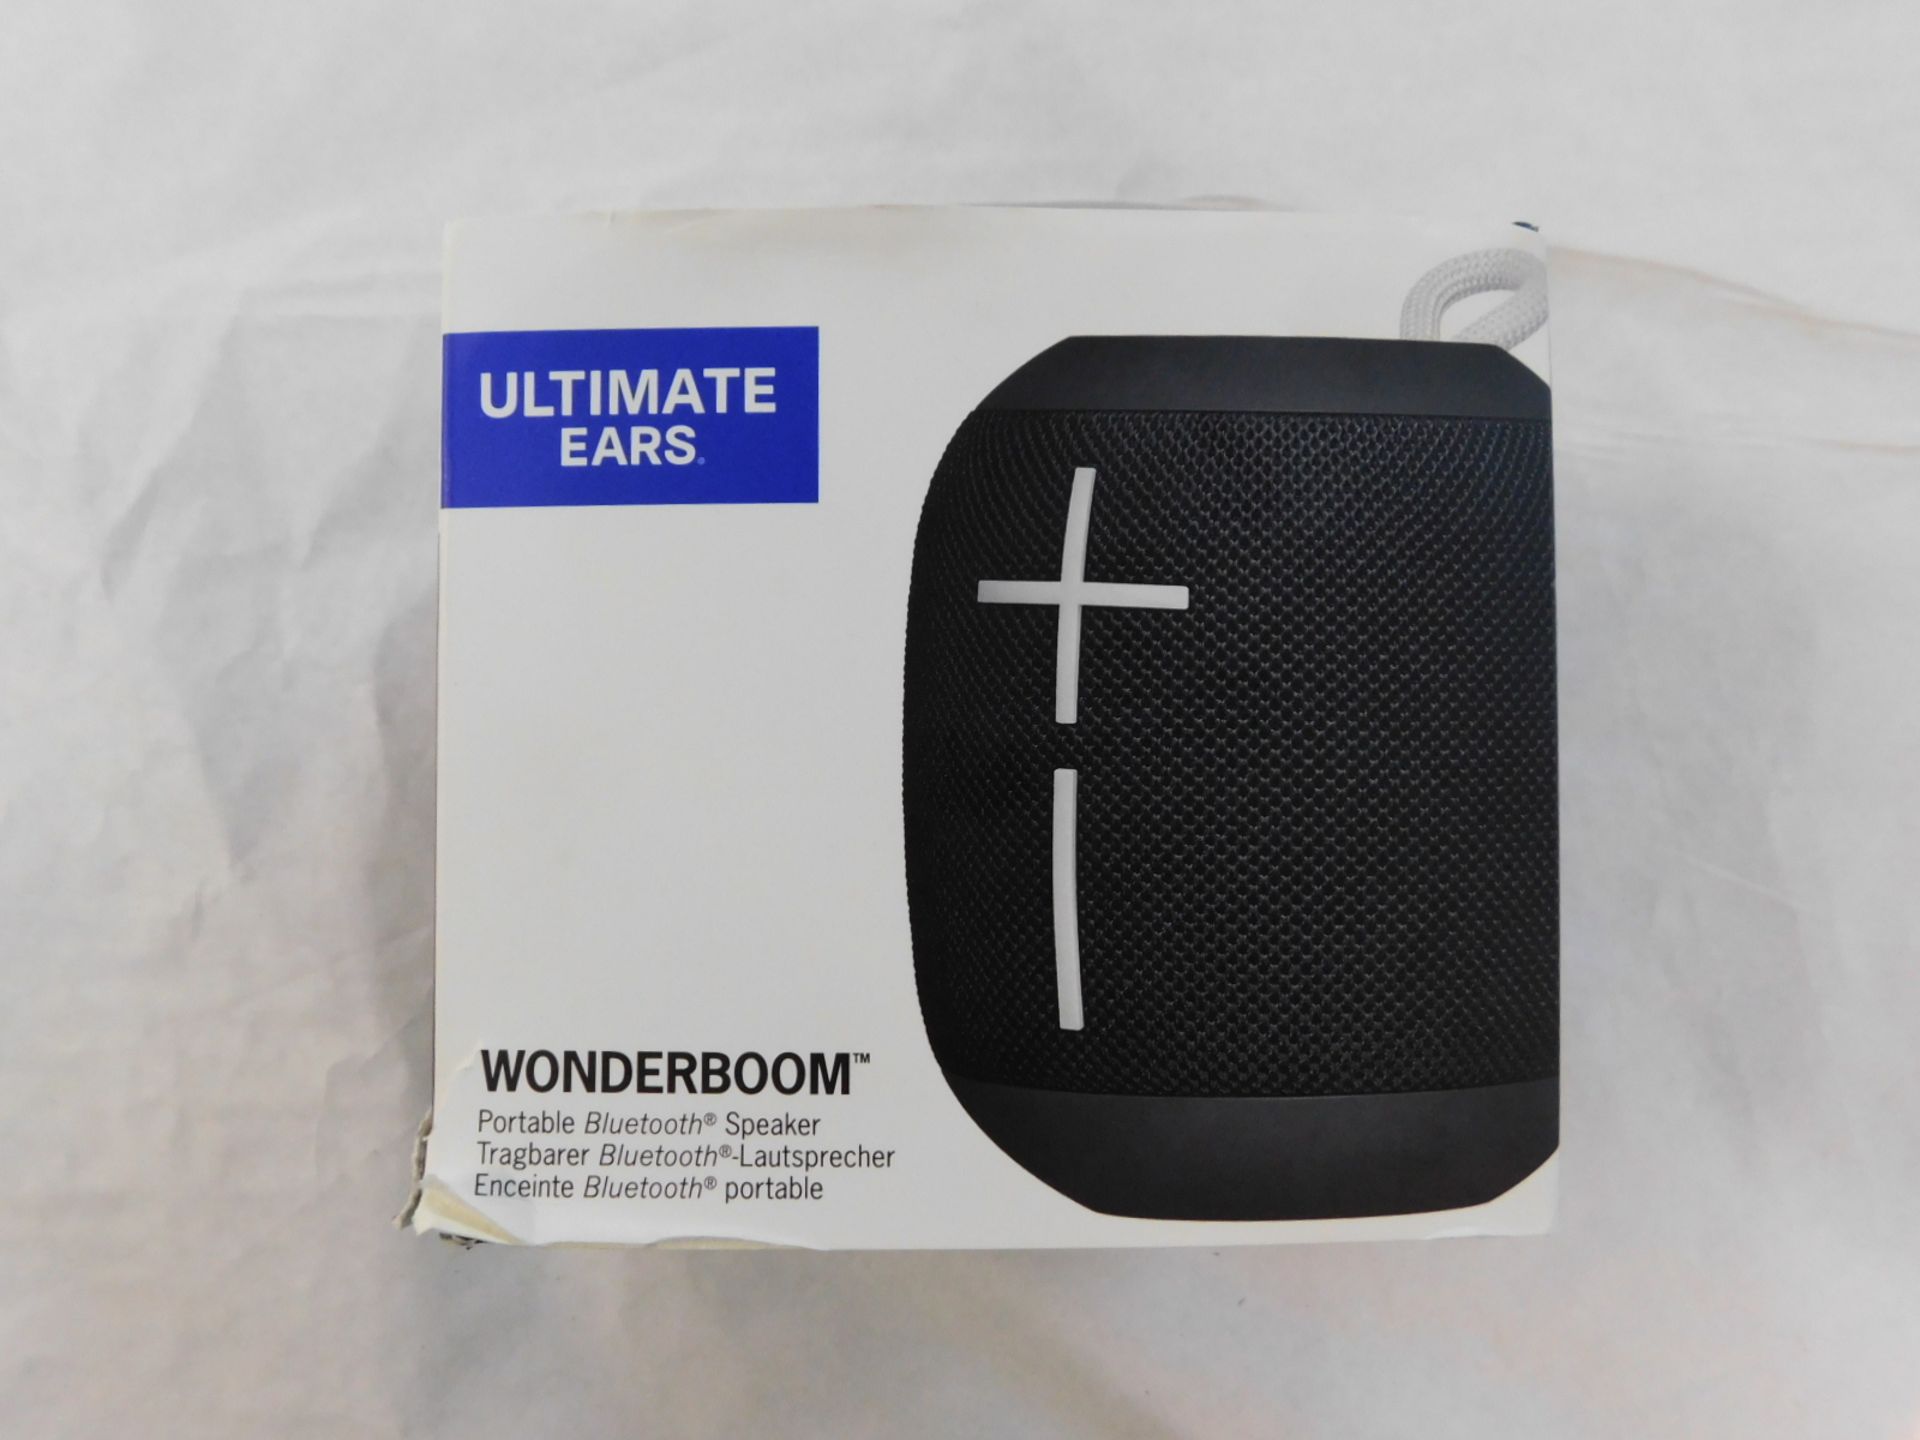 1 BOXED ULTIMATE EARS WONDERBOOM BLACK PORTABLE BLUETOOTH SPEAKER RRP Â£89.99